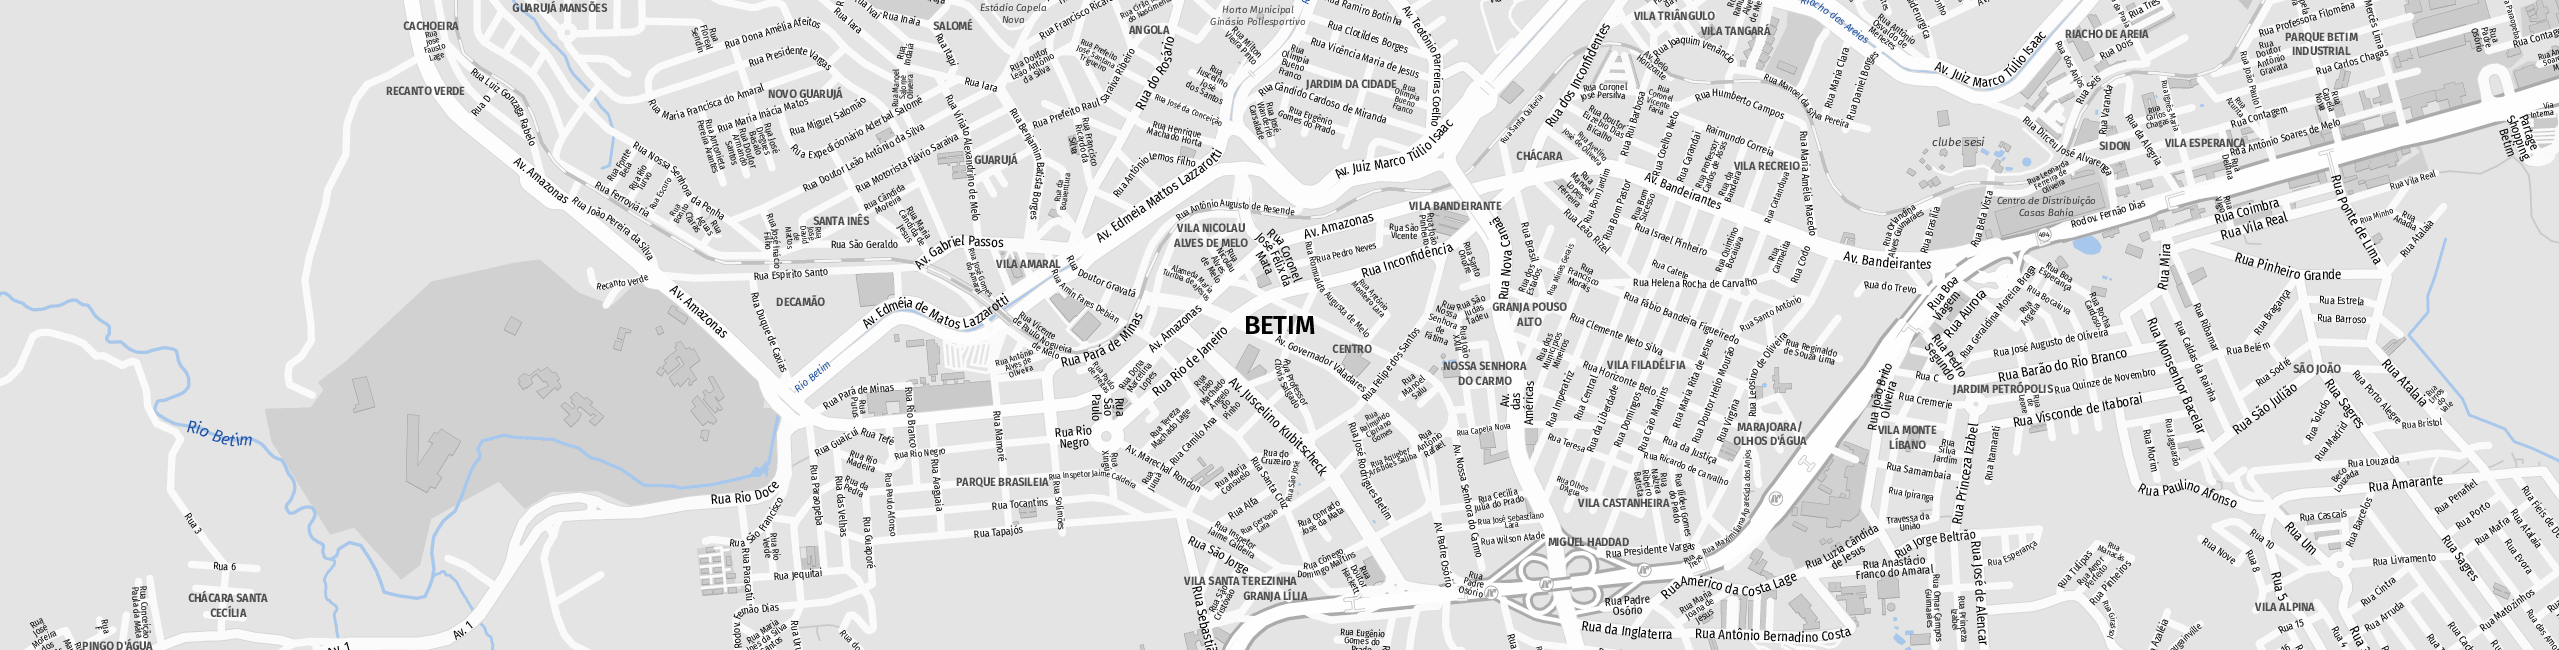 Stadtplan Betim zum Downloaden.